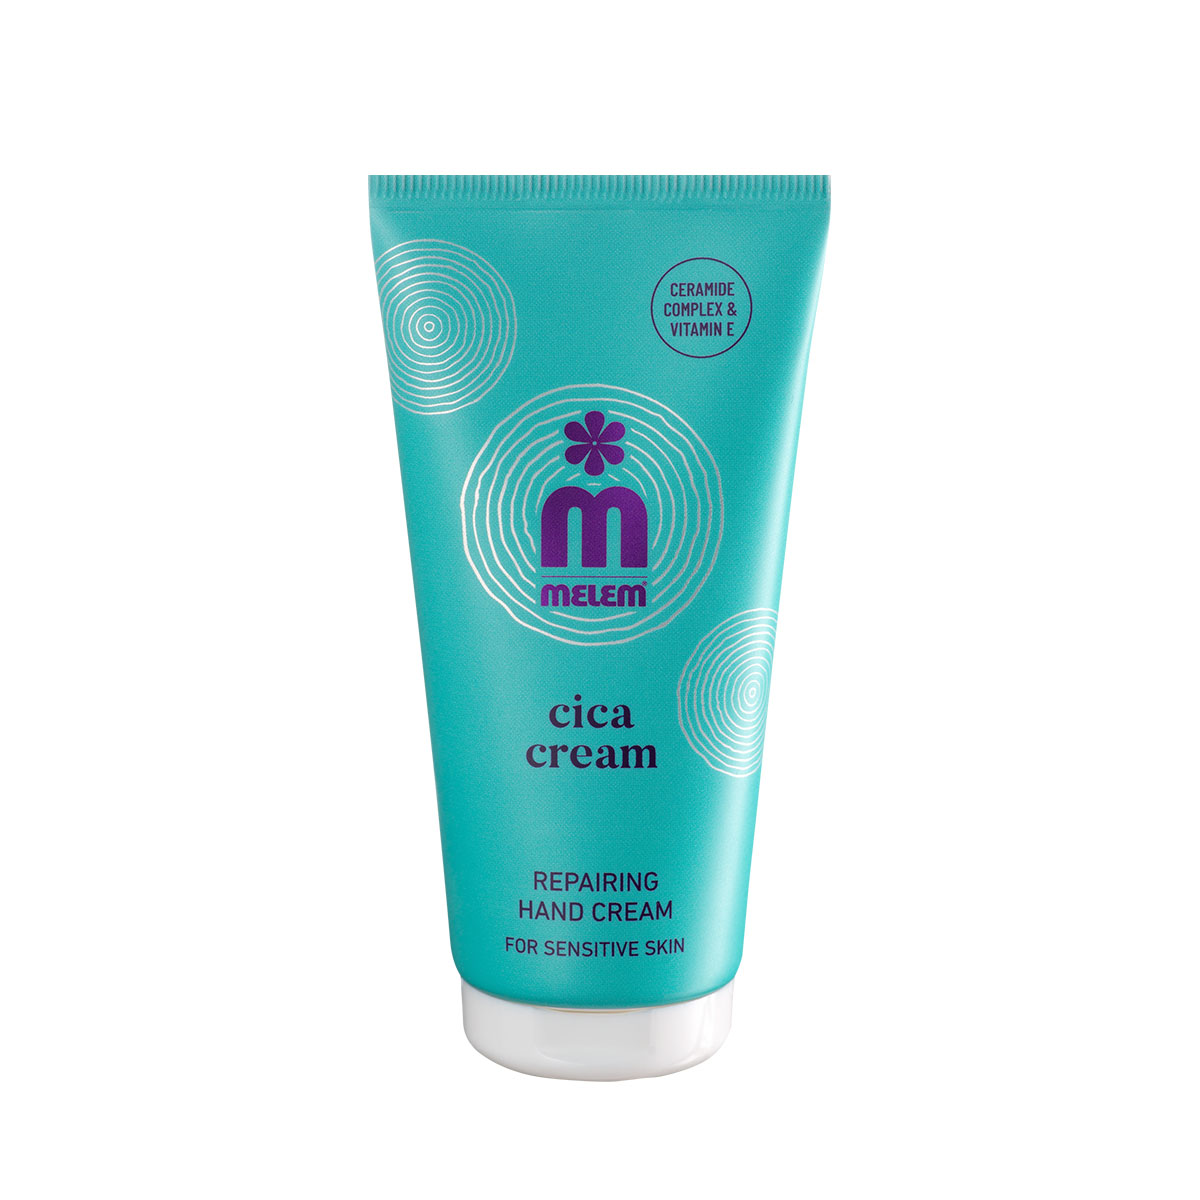 Melem Cica cream repairing hand cream, 50 ml